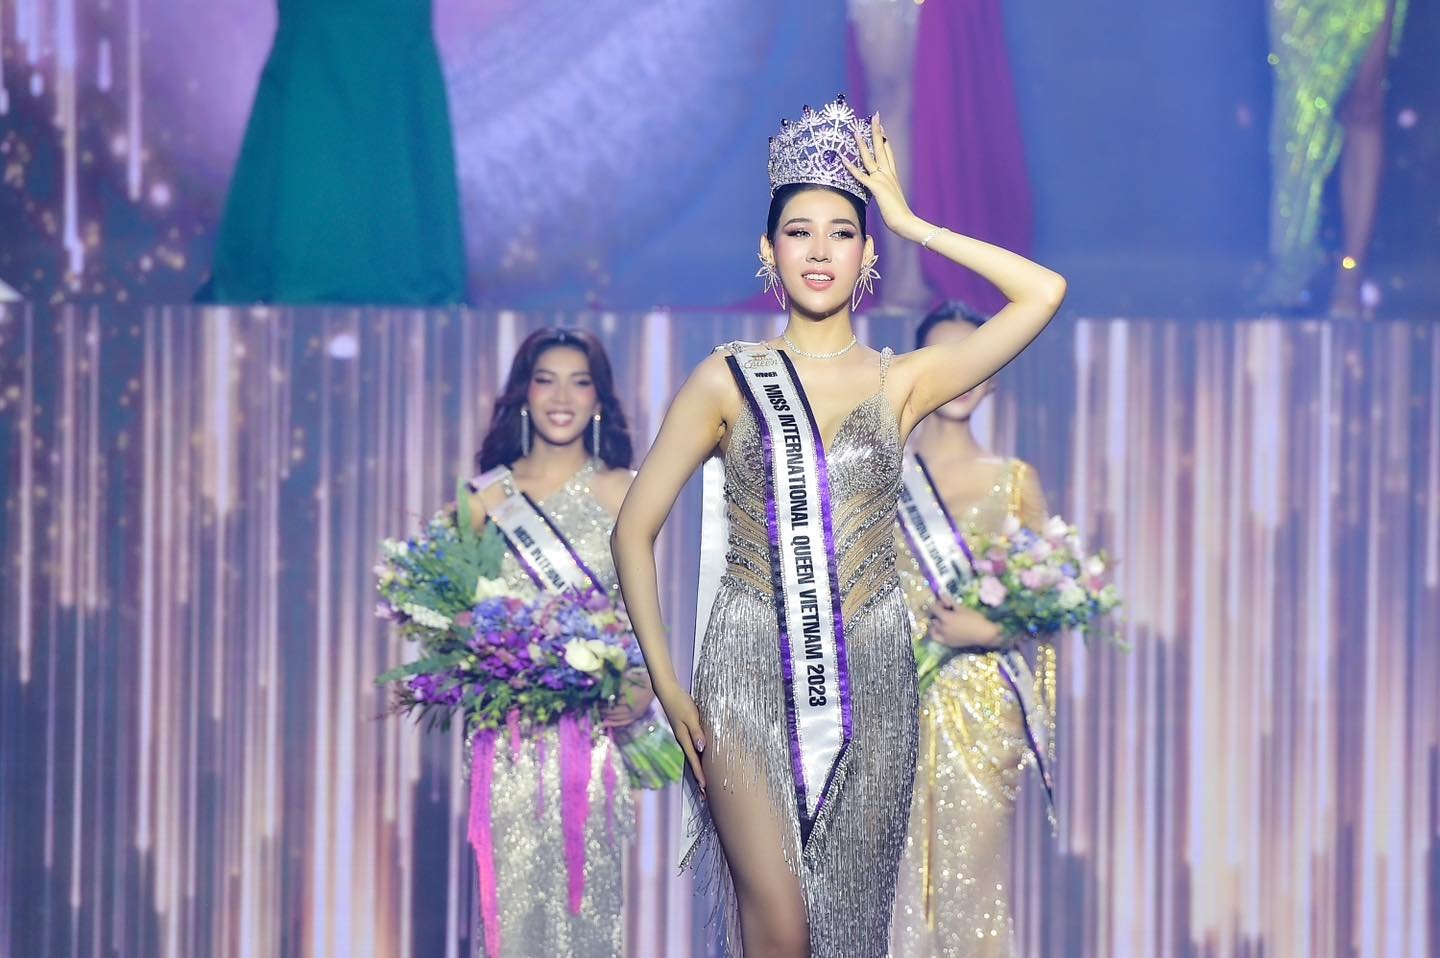 Tối 8.4, Dịu Thảo đã chính thức giành ngôi vị Hoa hậu chuyển